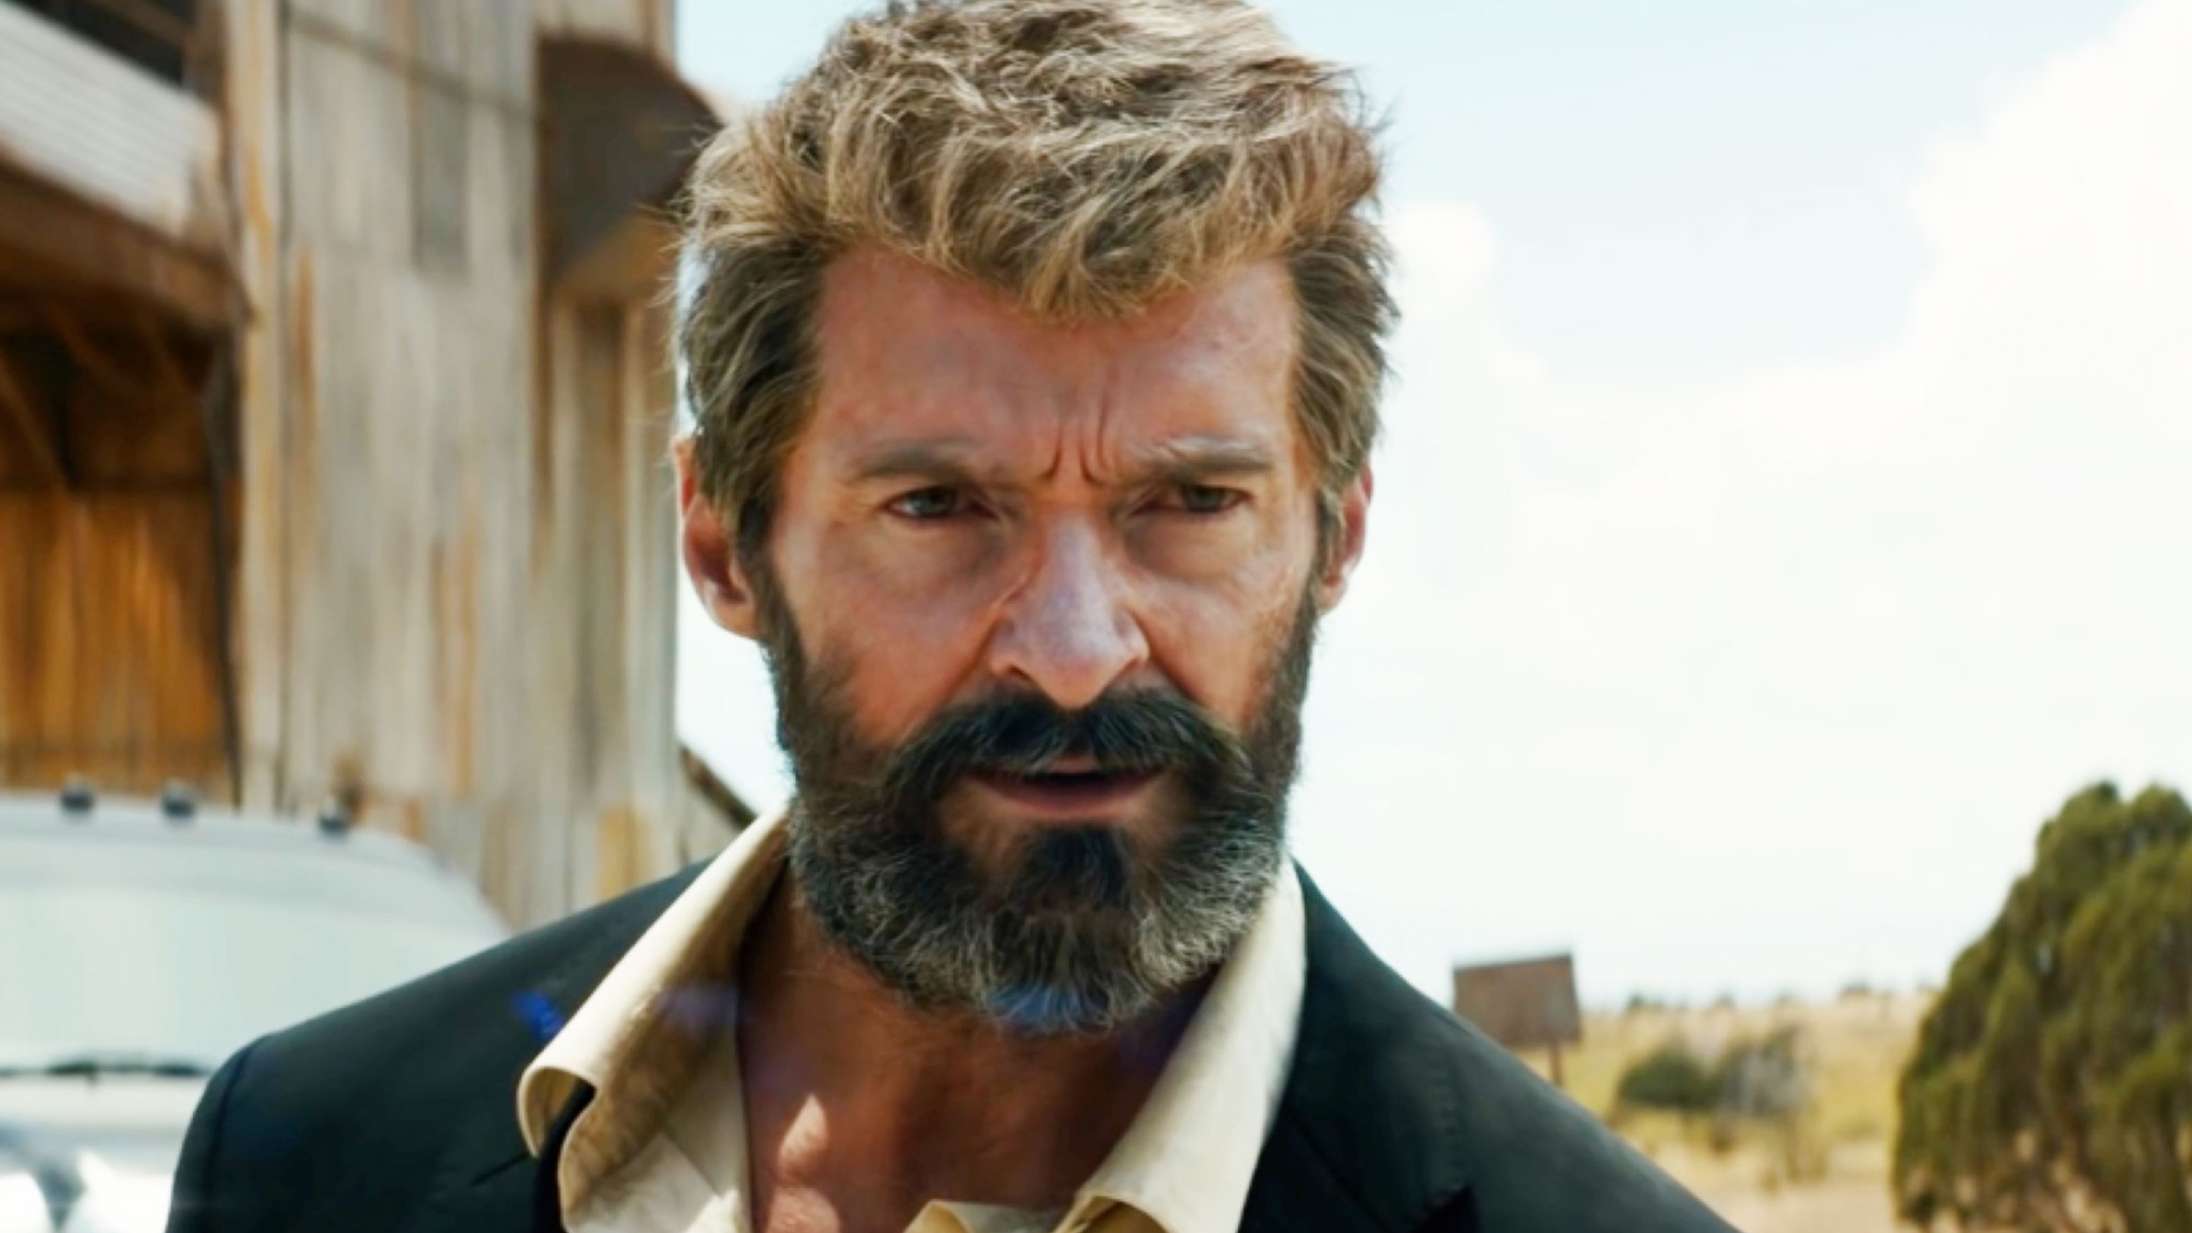 Hugh Jackman vender tilbage som Wolverine i ‘Deadpool 3’ – se den morsomme annoncering med Reynolds og Jackman